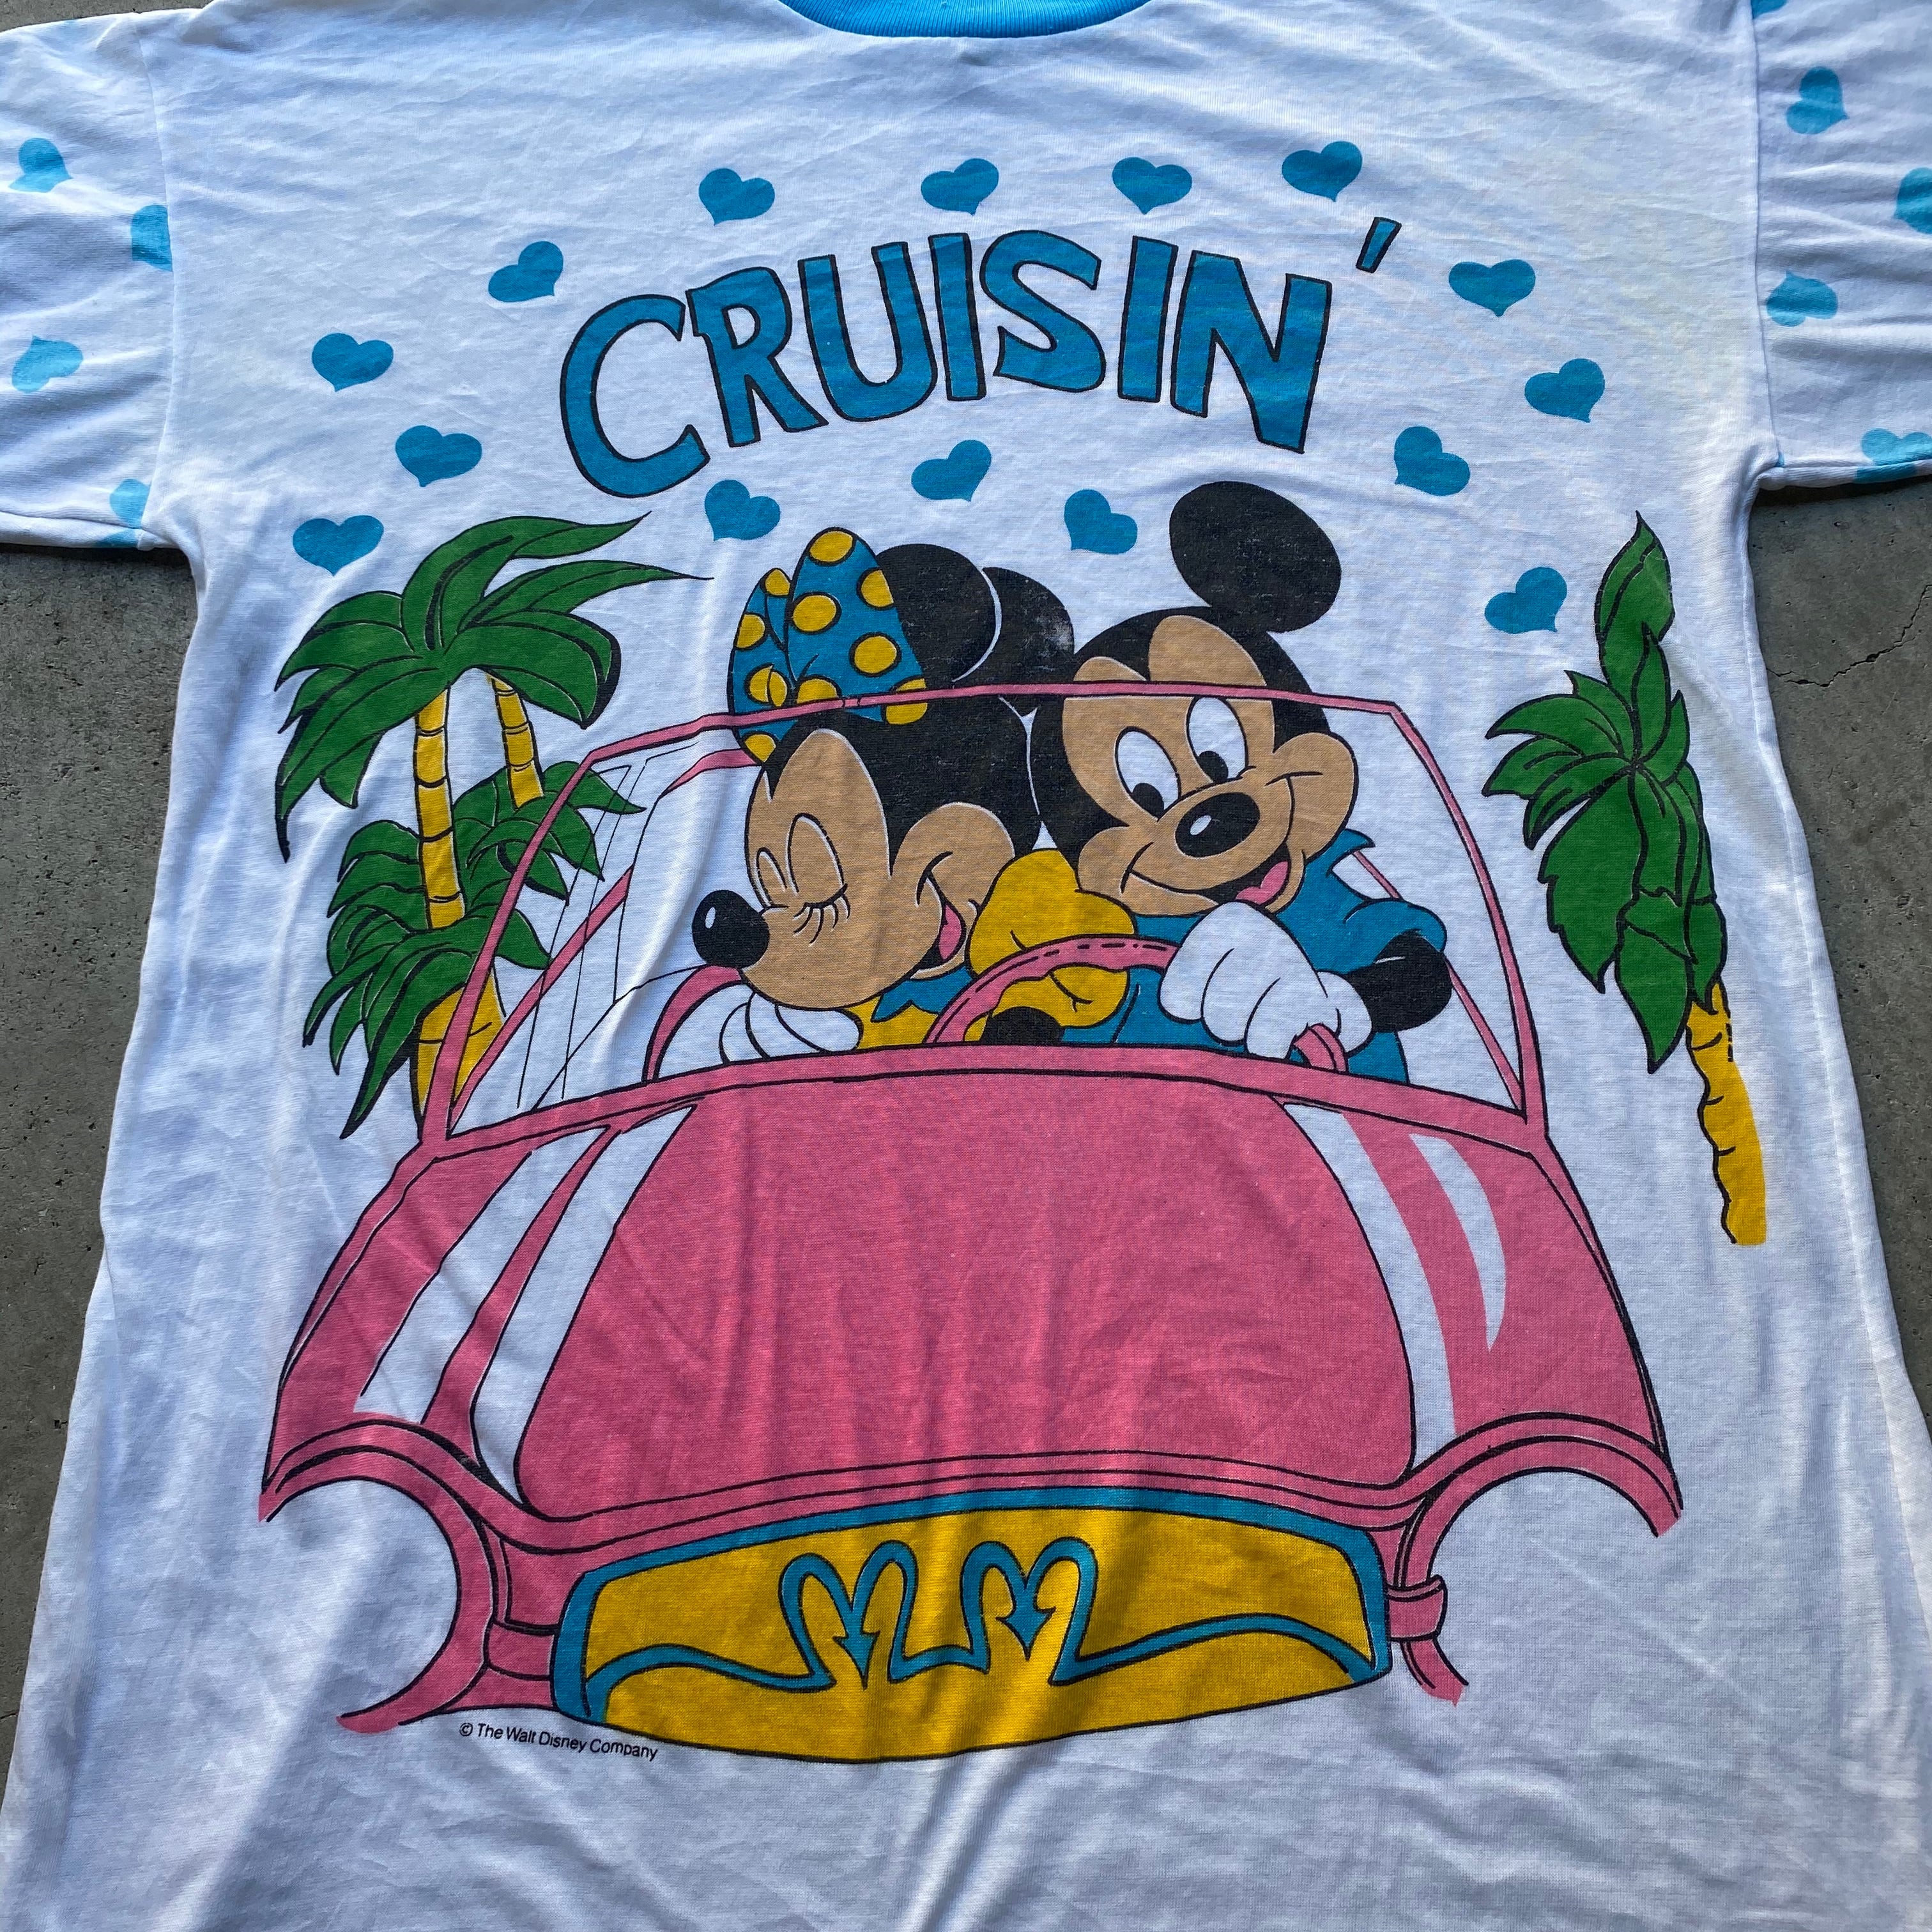 80年代 Disney ディズニー Mickey Mouse Minnie Mouse ミッキー ミニー Crusin プリントtシャツ キャラクター Tシャツ ヴィンテージ メンズ レディース 古着 Tシャツ Cs2212 50 Cave 古着屋 公式 古着通販サイト